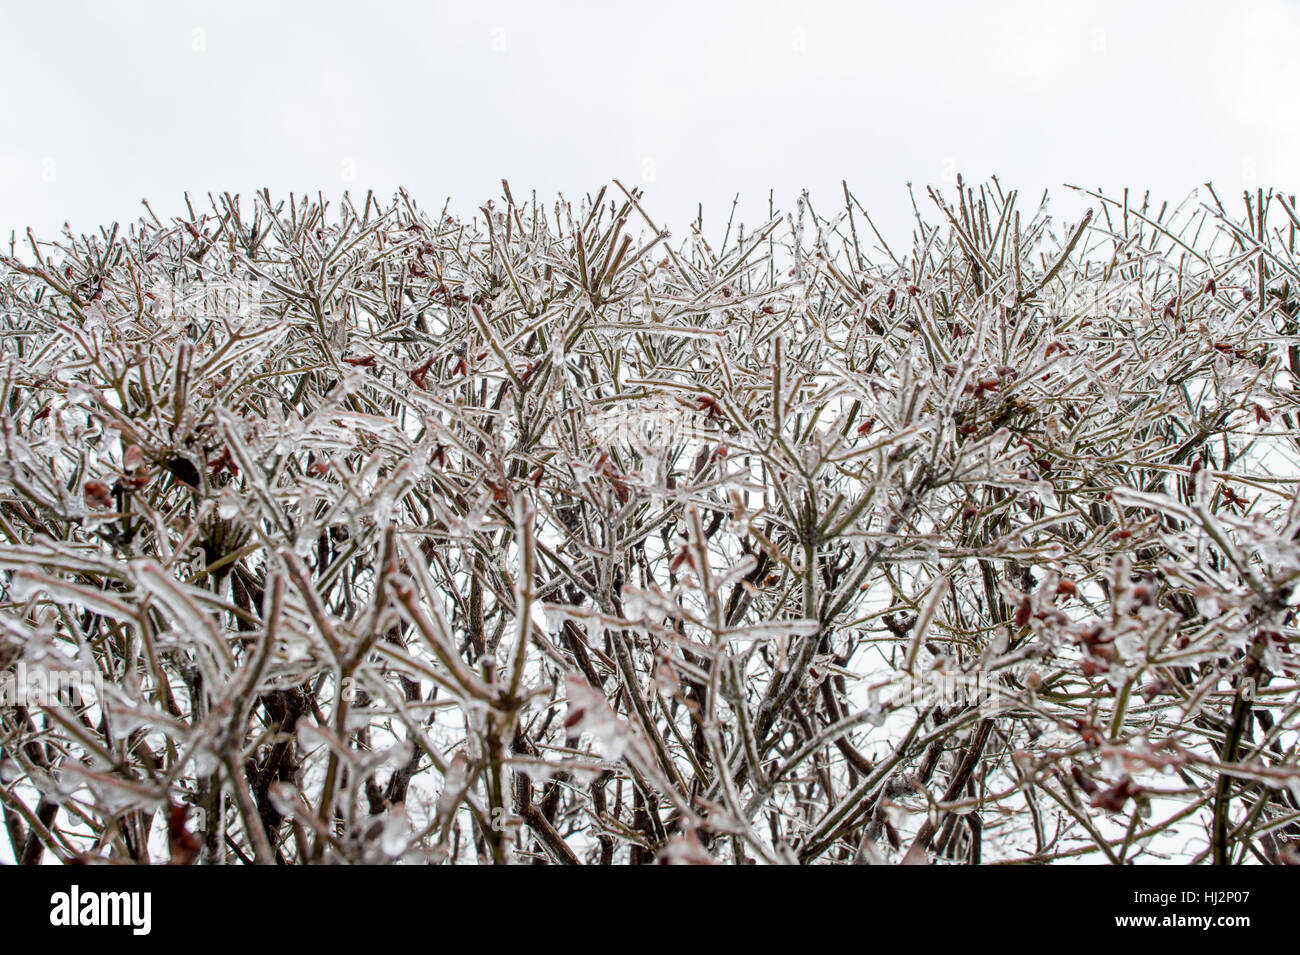 Un buisson de branches est recouverte de glace sous un ciel couvert journée d'hiver. Banque D'Images